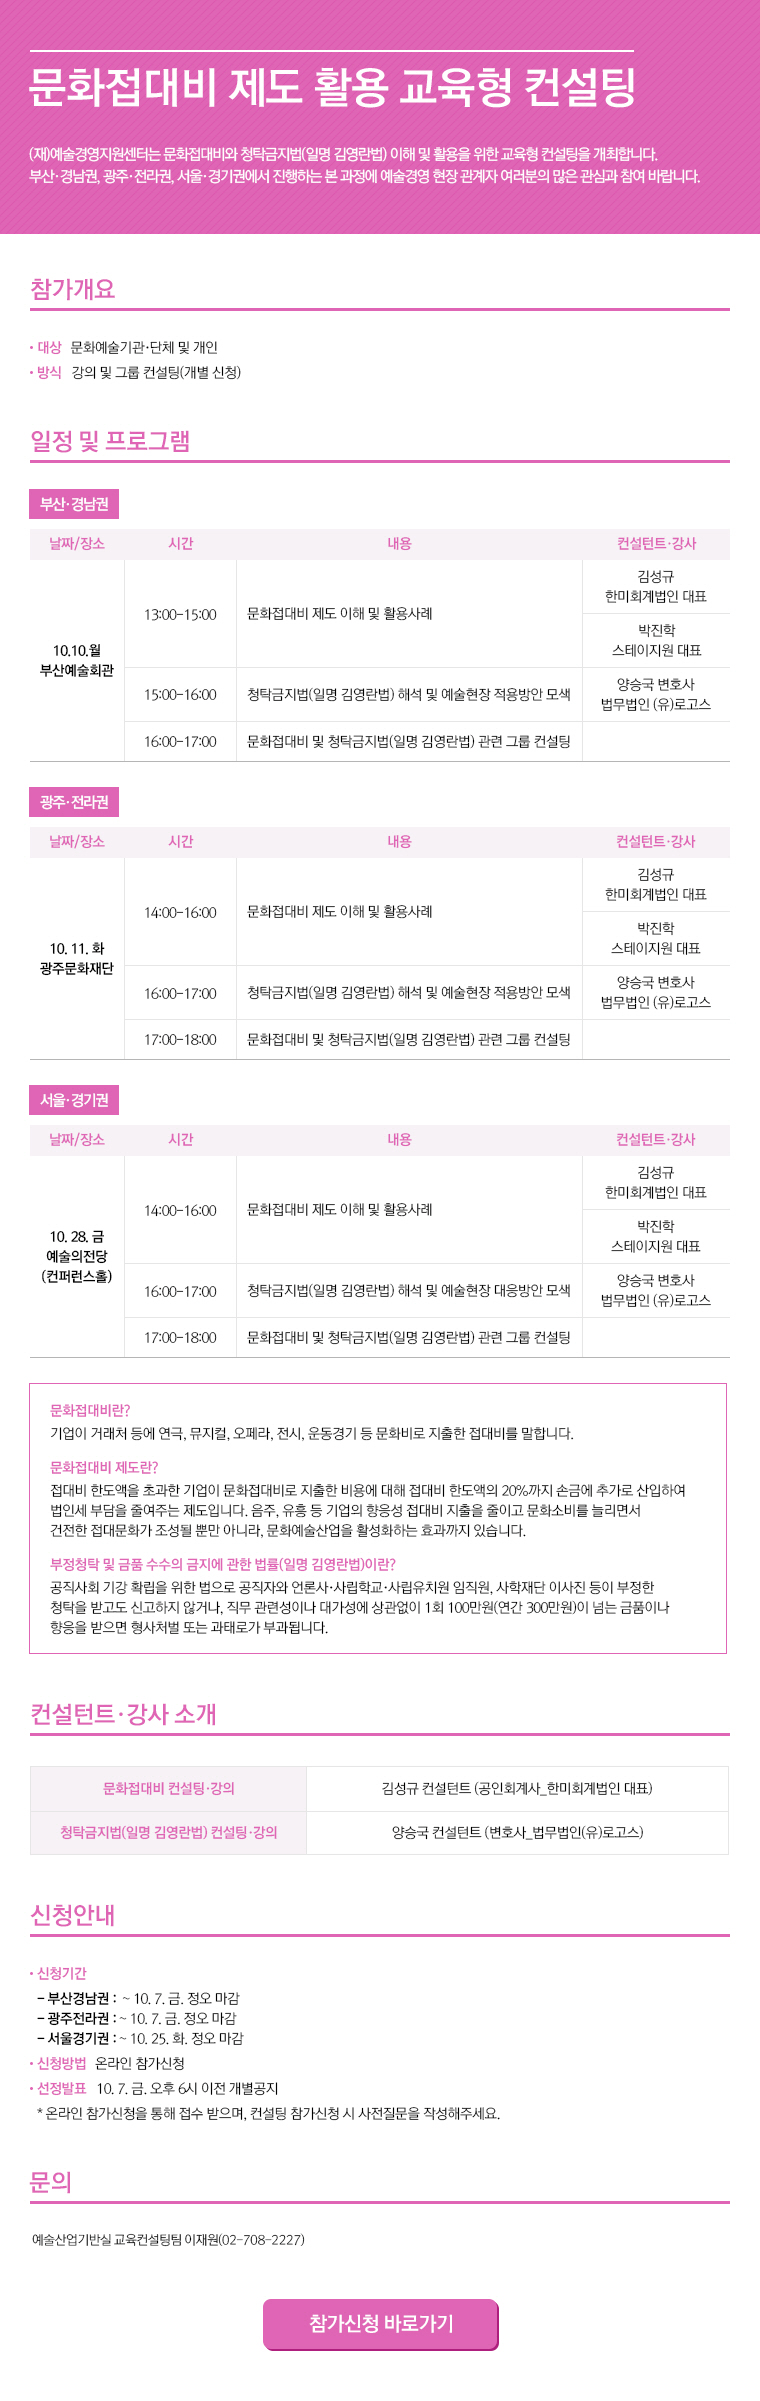 2016 예술경영아카데미 LINK 예술 머천다이징(MD) 기획·개발